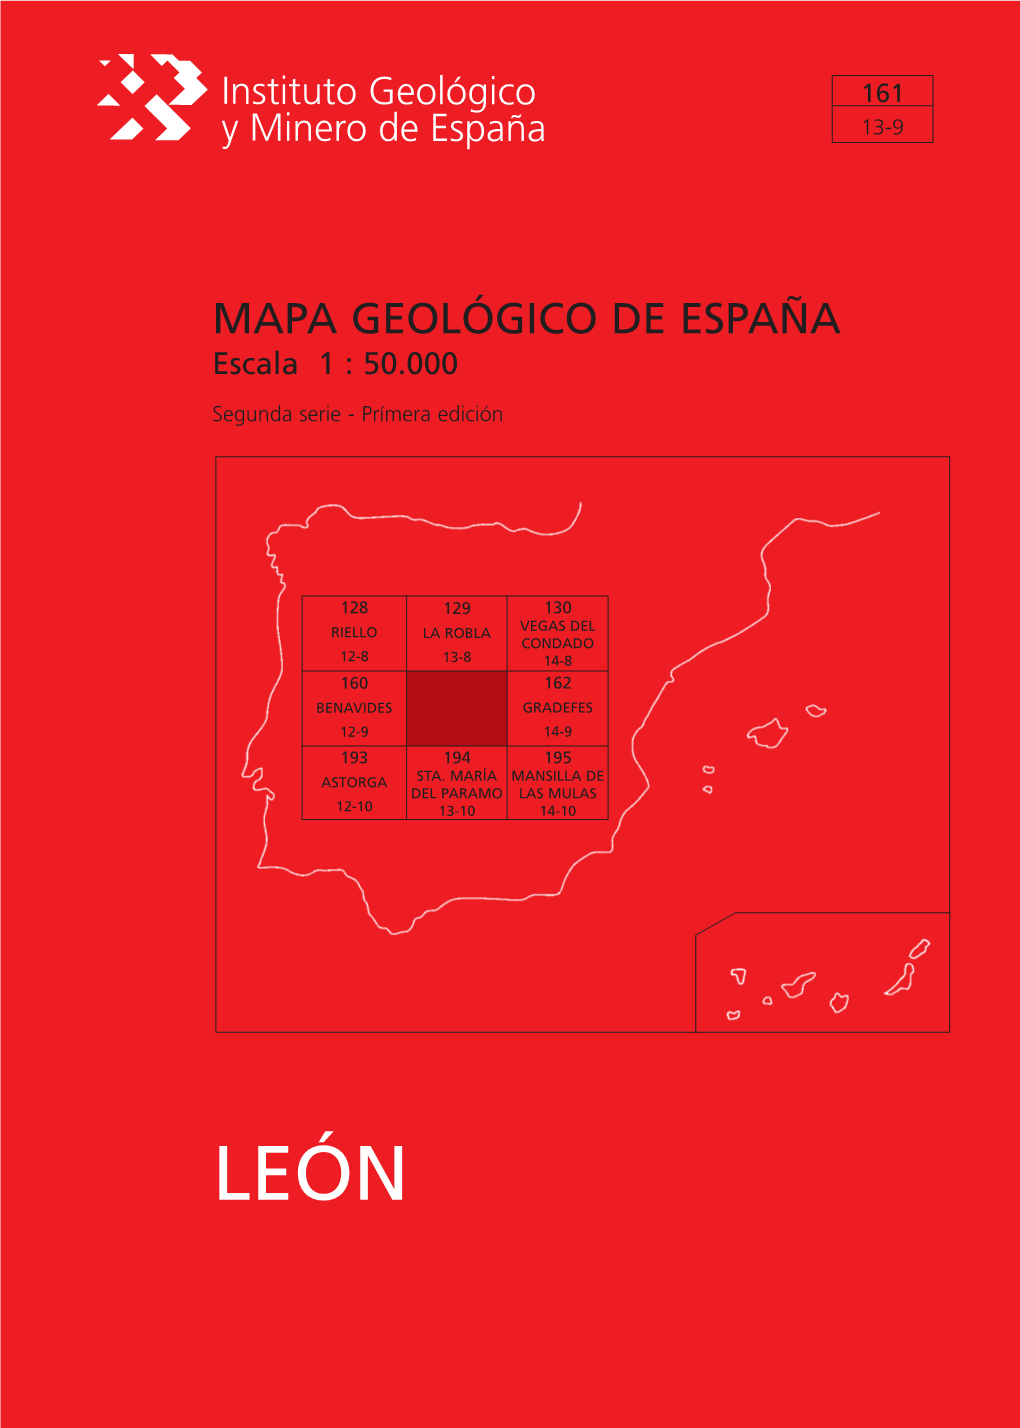 MAPA GEOLÓGICO DE ESPAÑA Escala 1 : 50.000